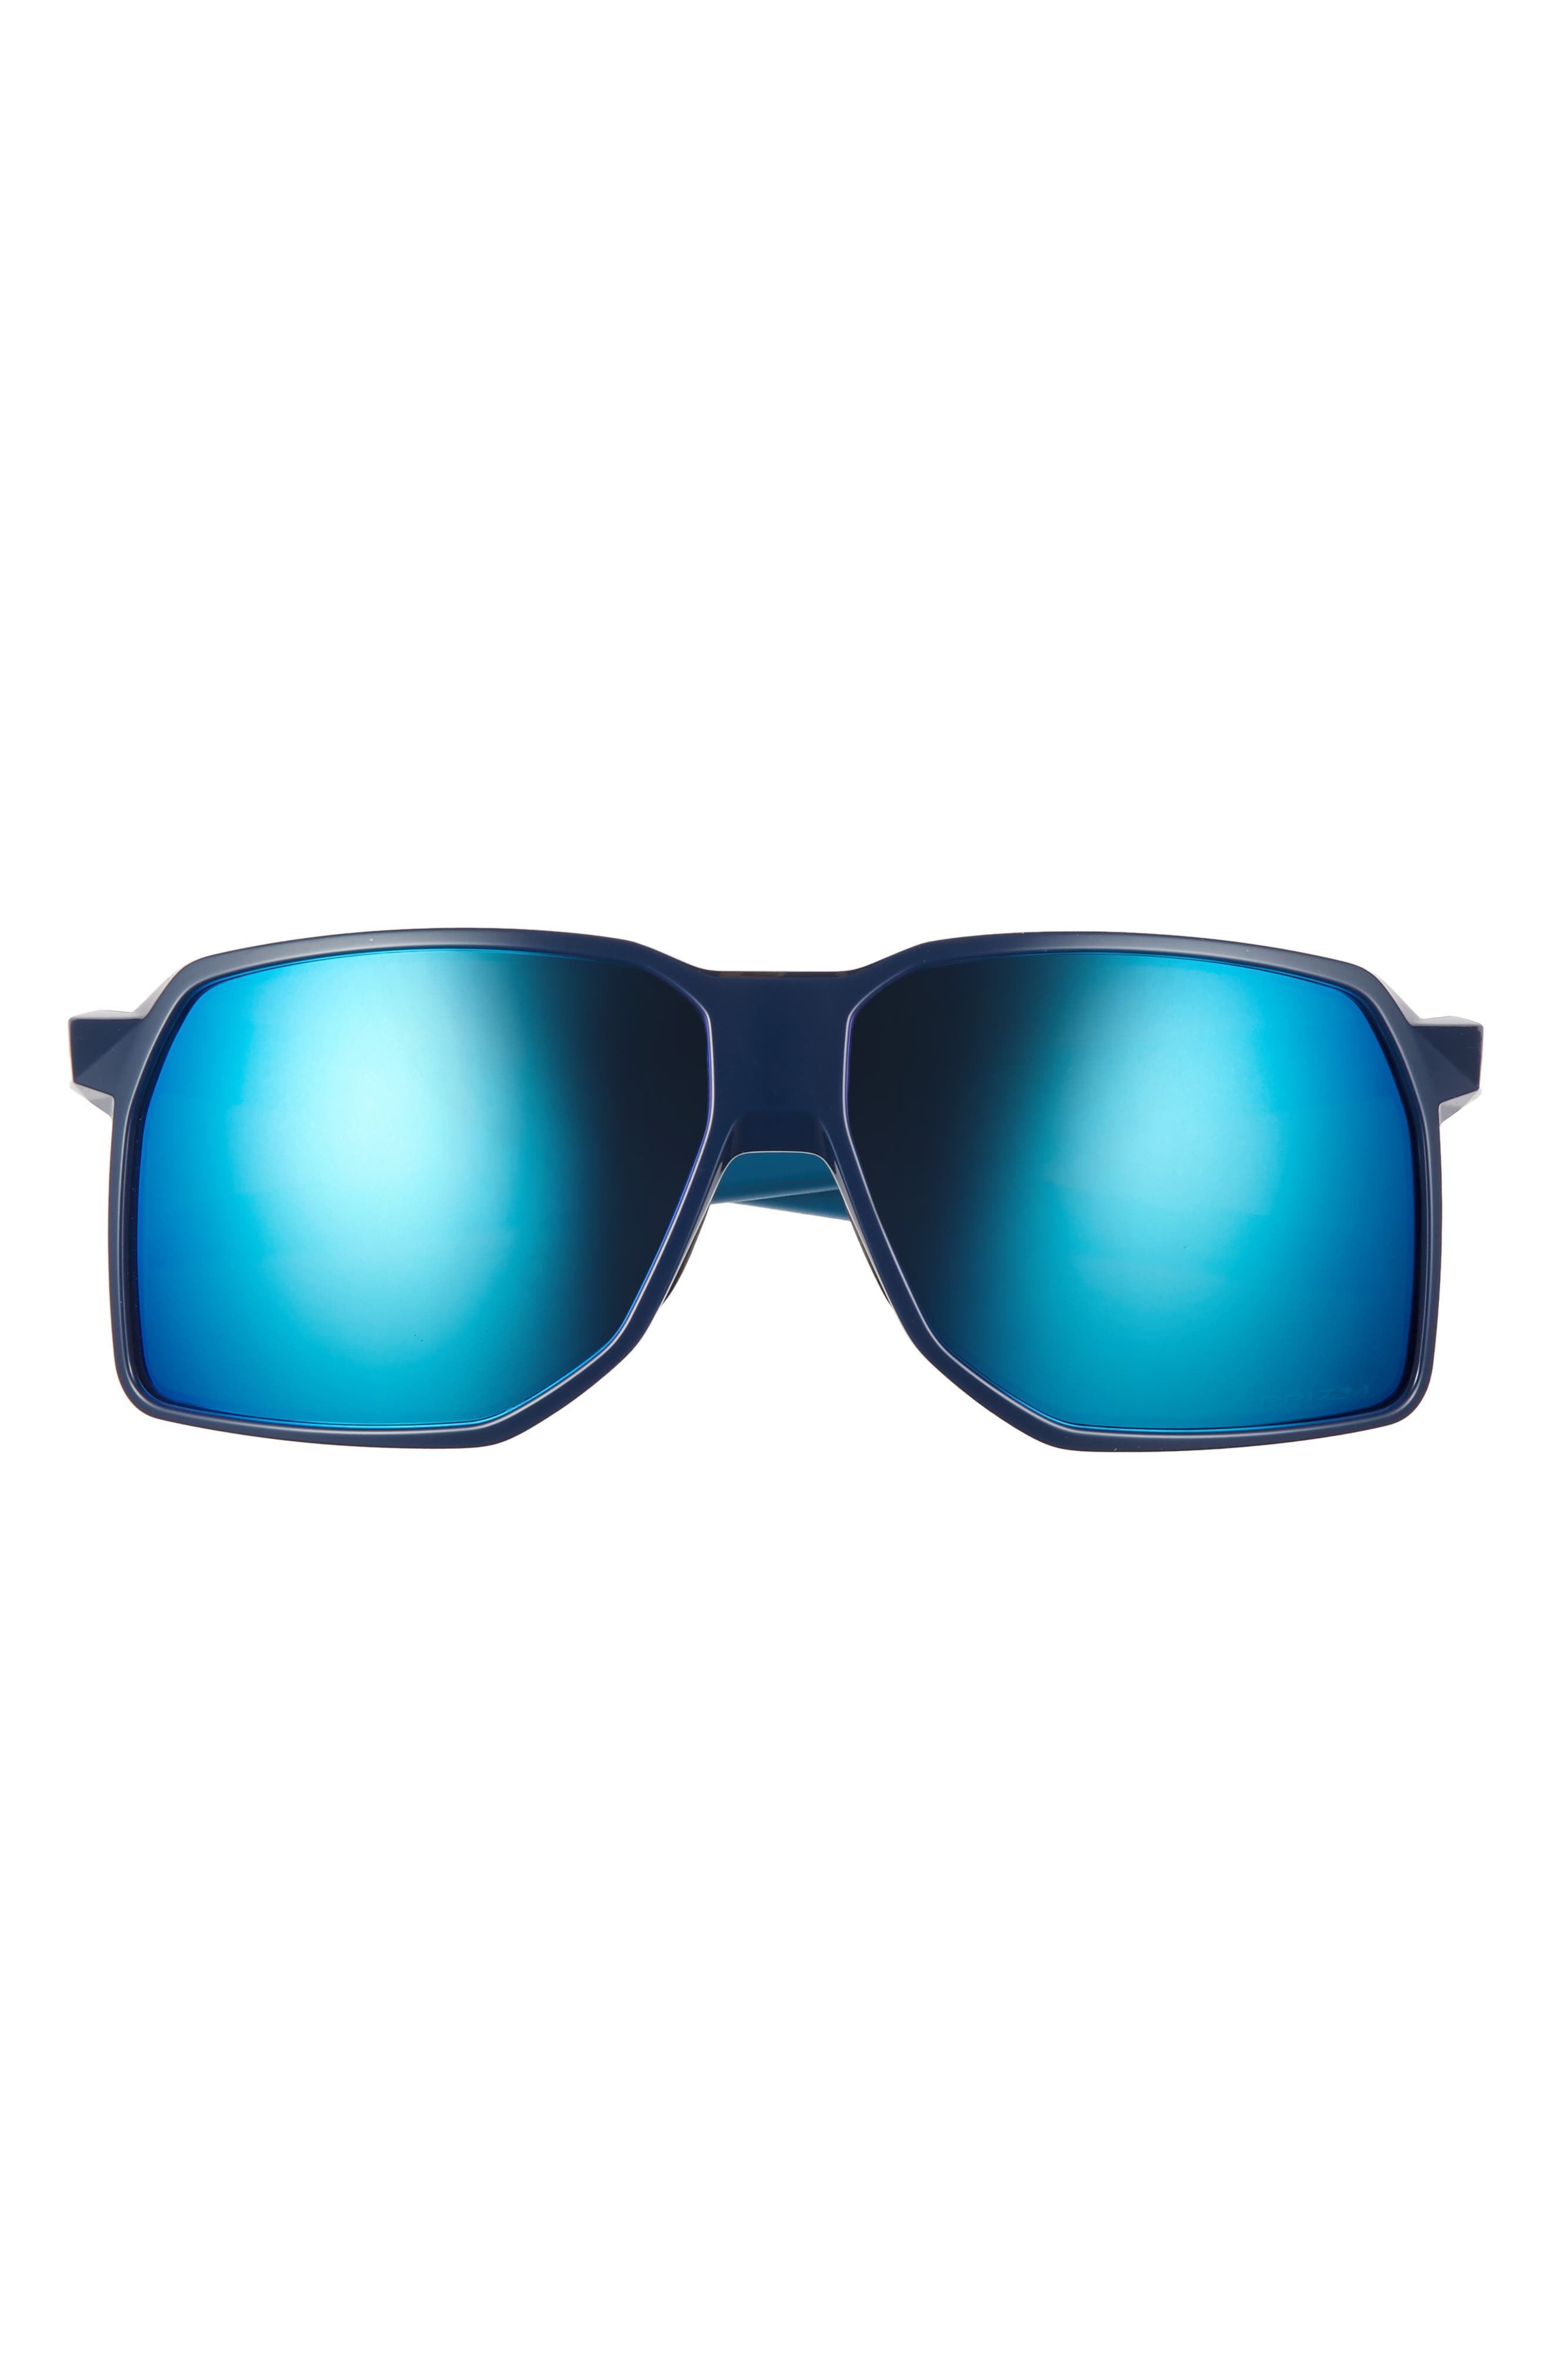 oakley sunglasses accessories